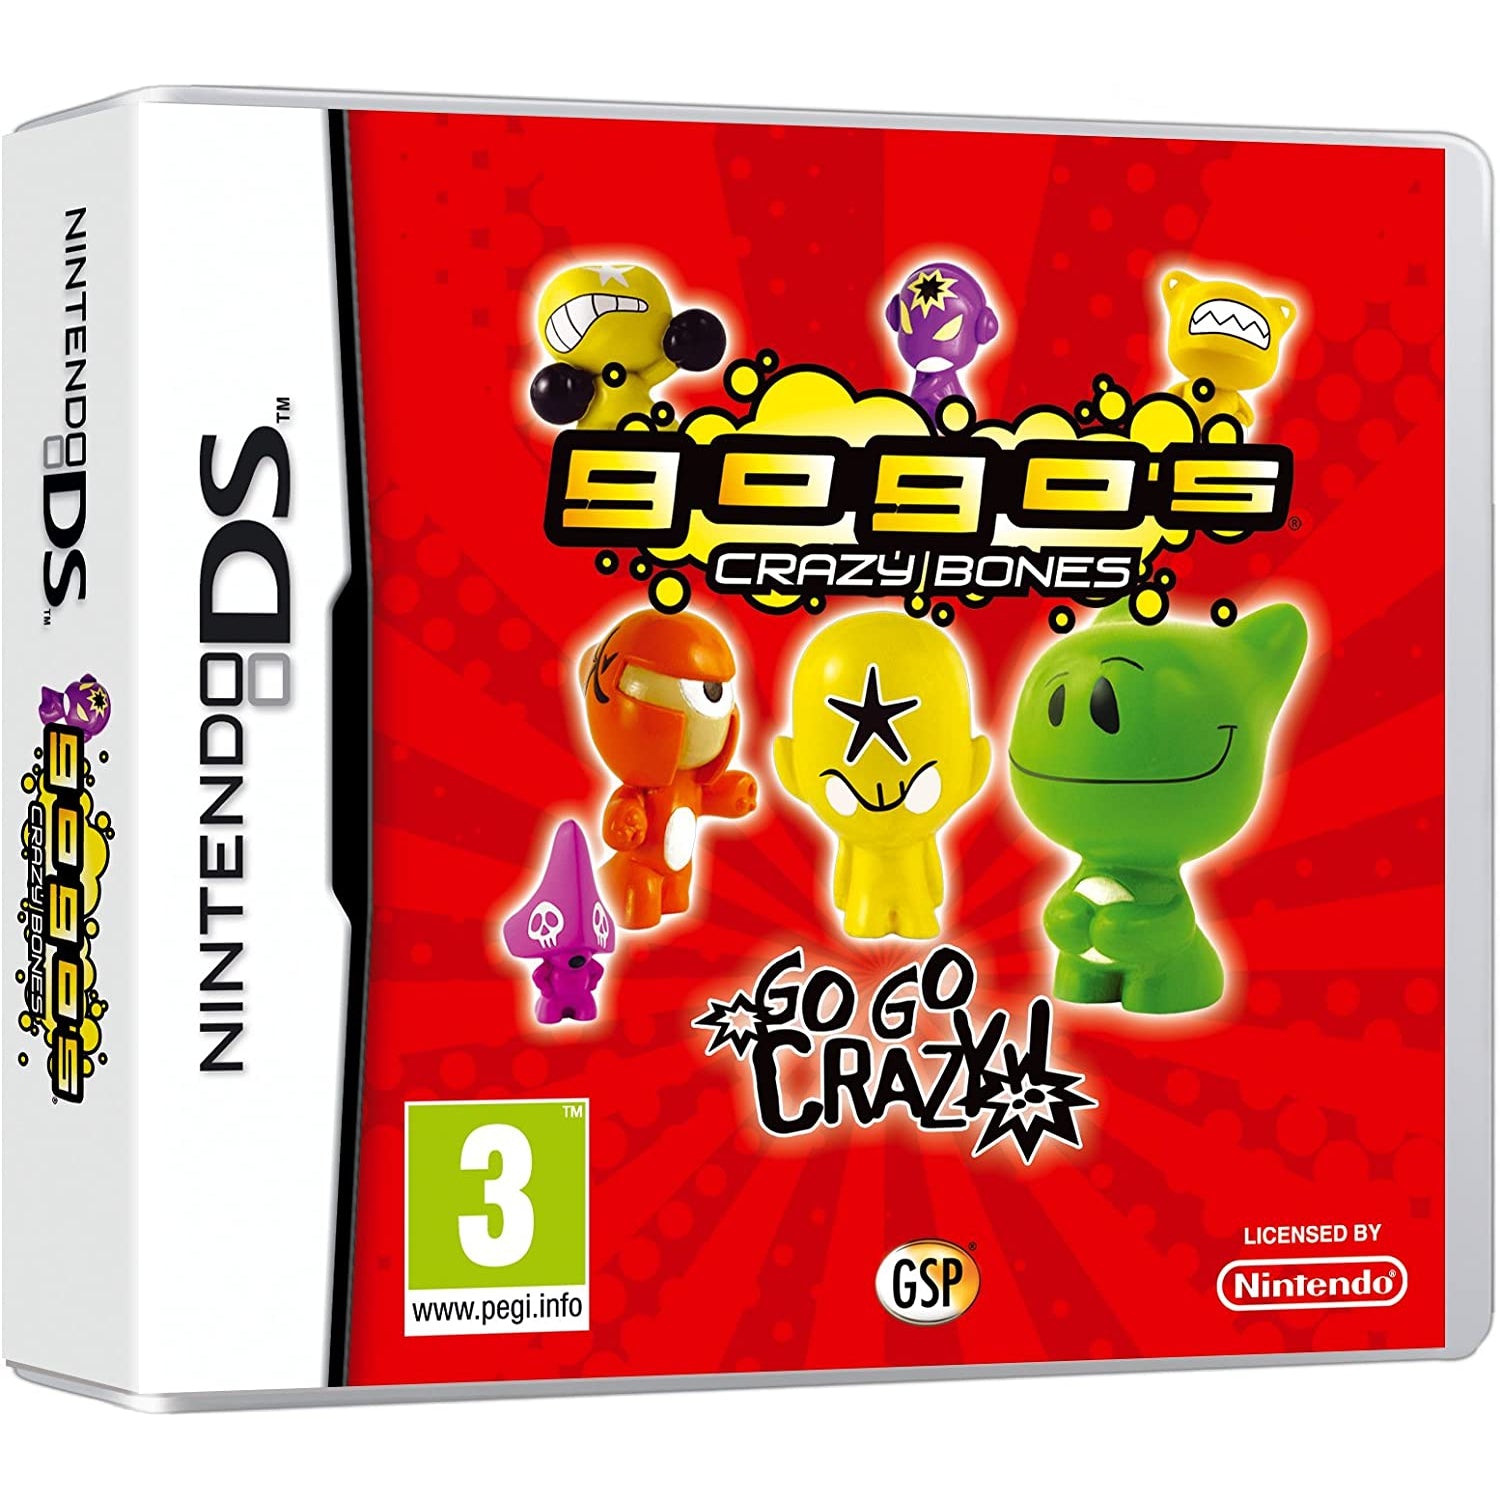 Gogo's Crazy Bones (Nintendo DS)